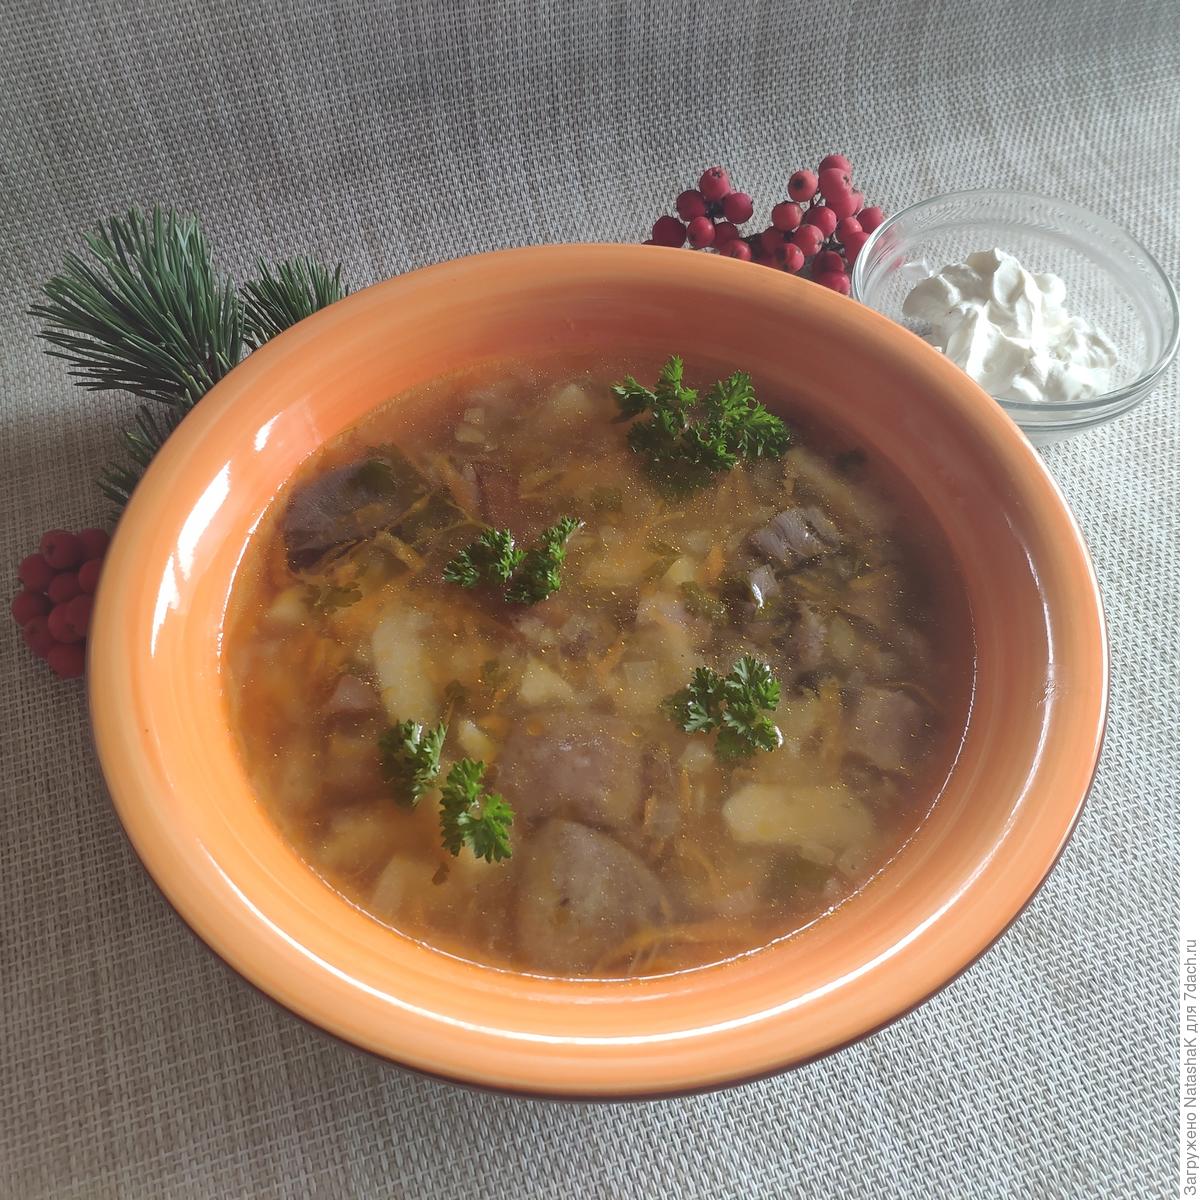 Суп из лесных грибов по рецепту бабушки